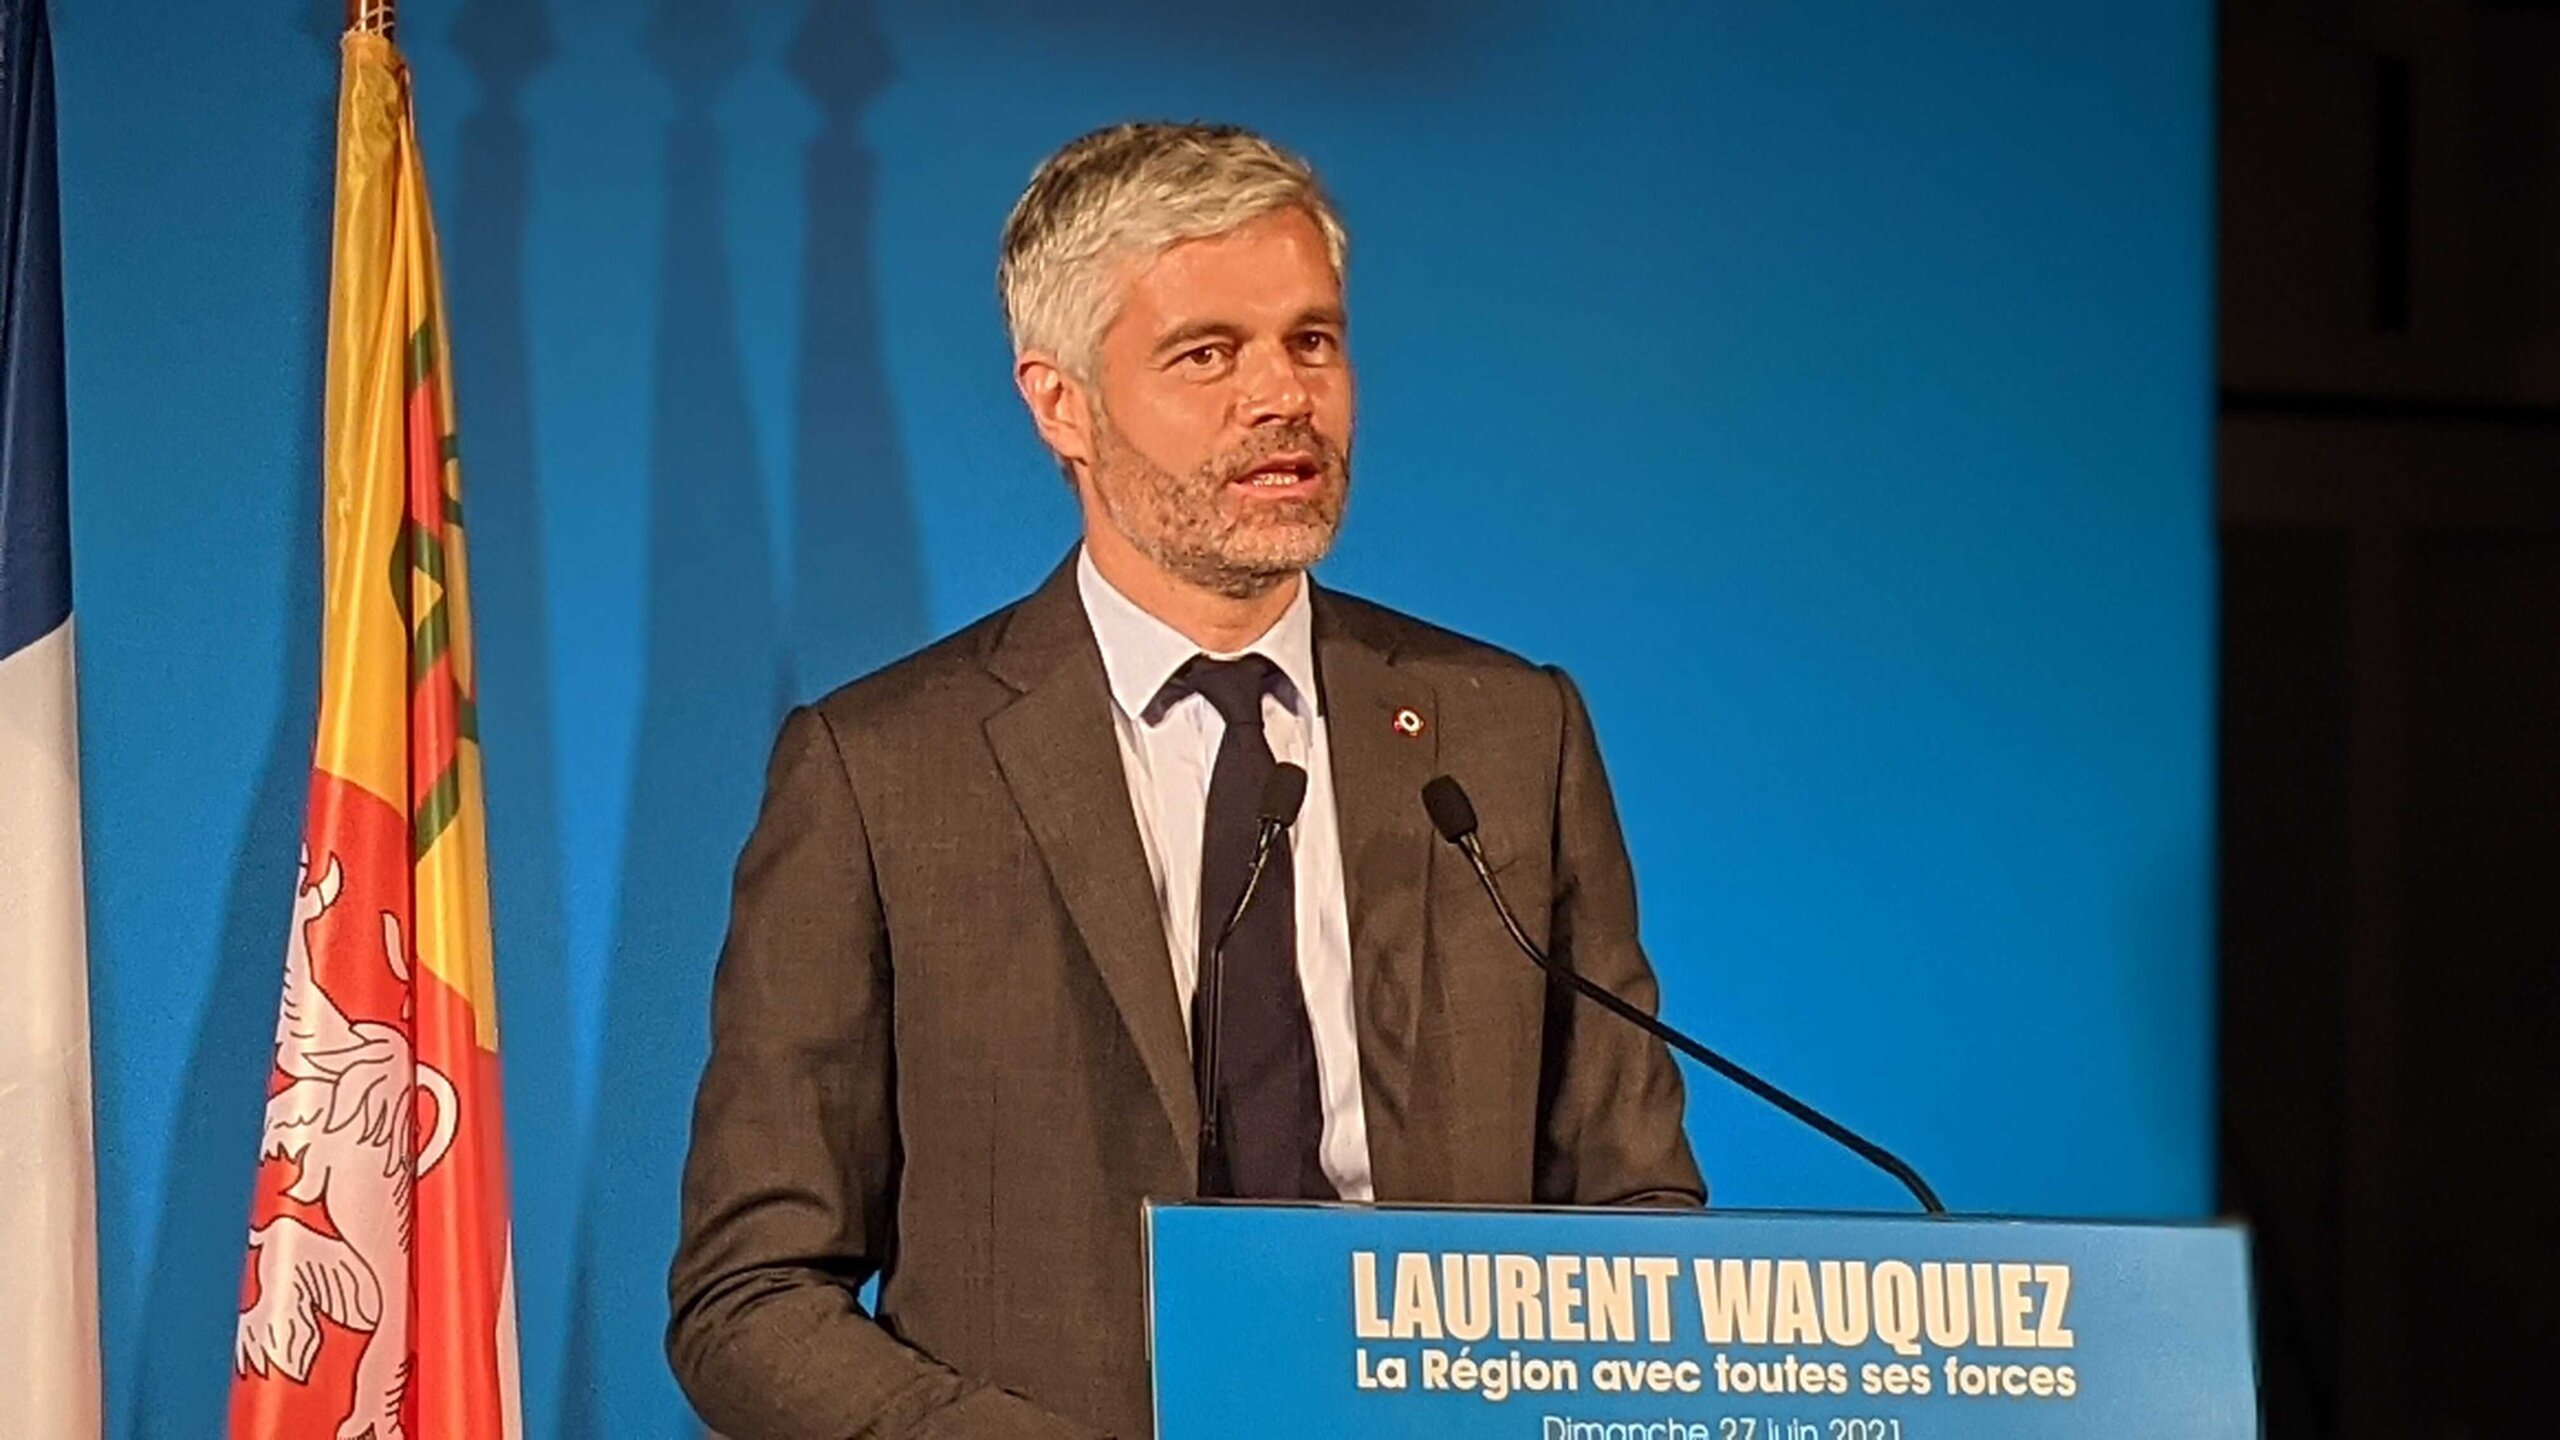 Laurent Wauquiez élections régionales 2021 victoire